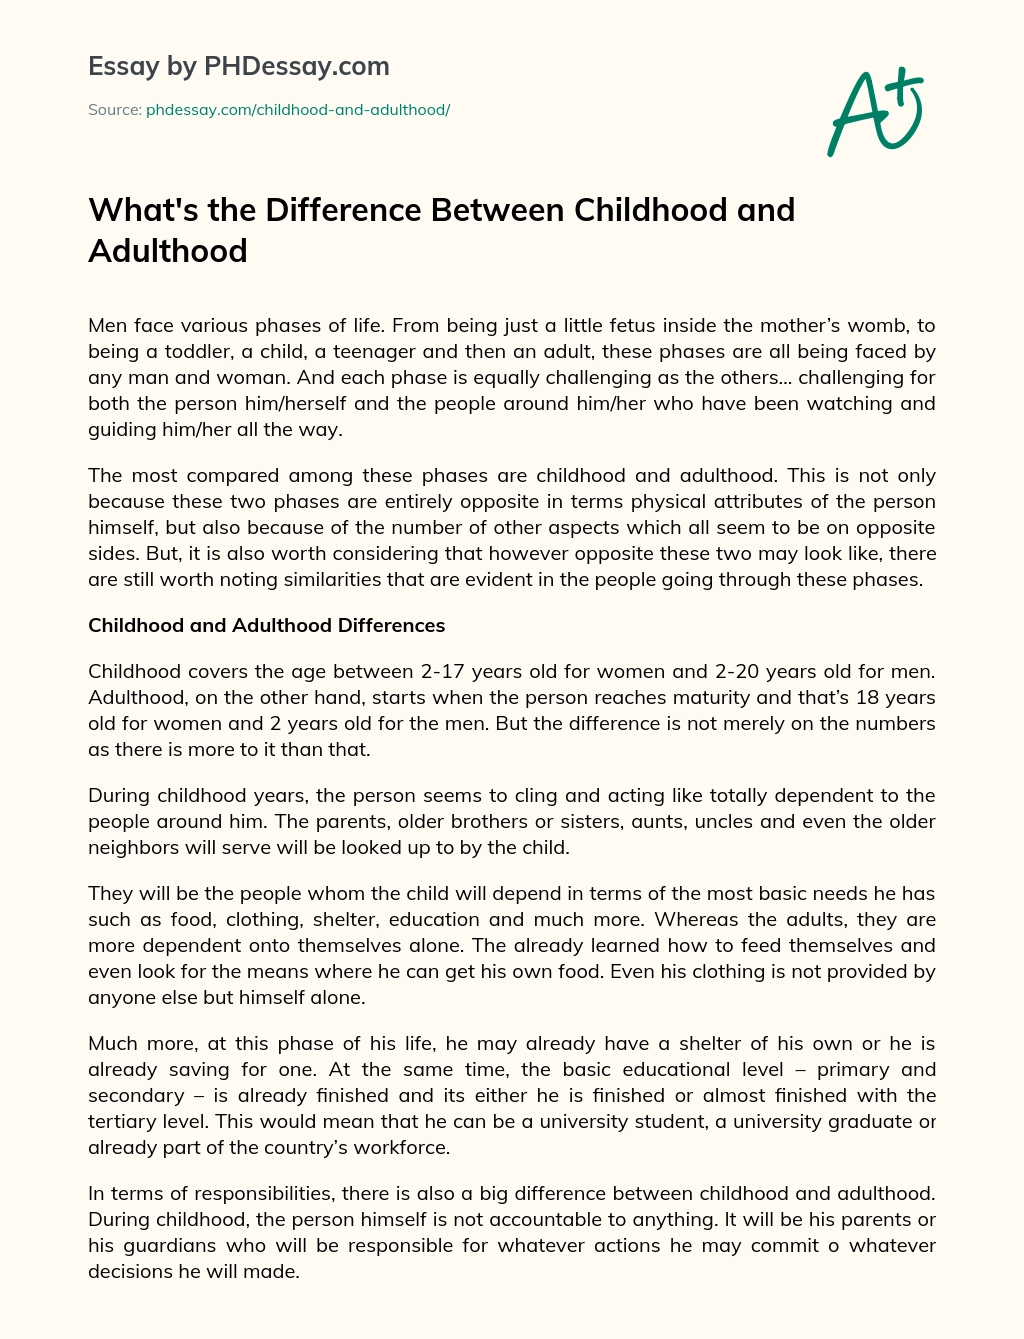 hvad er forskellen mellem barndom og voksenalder essay